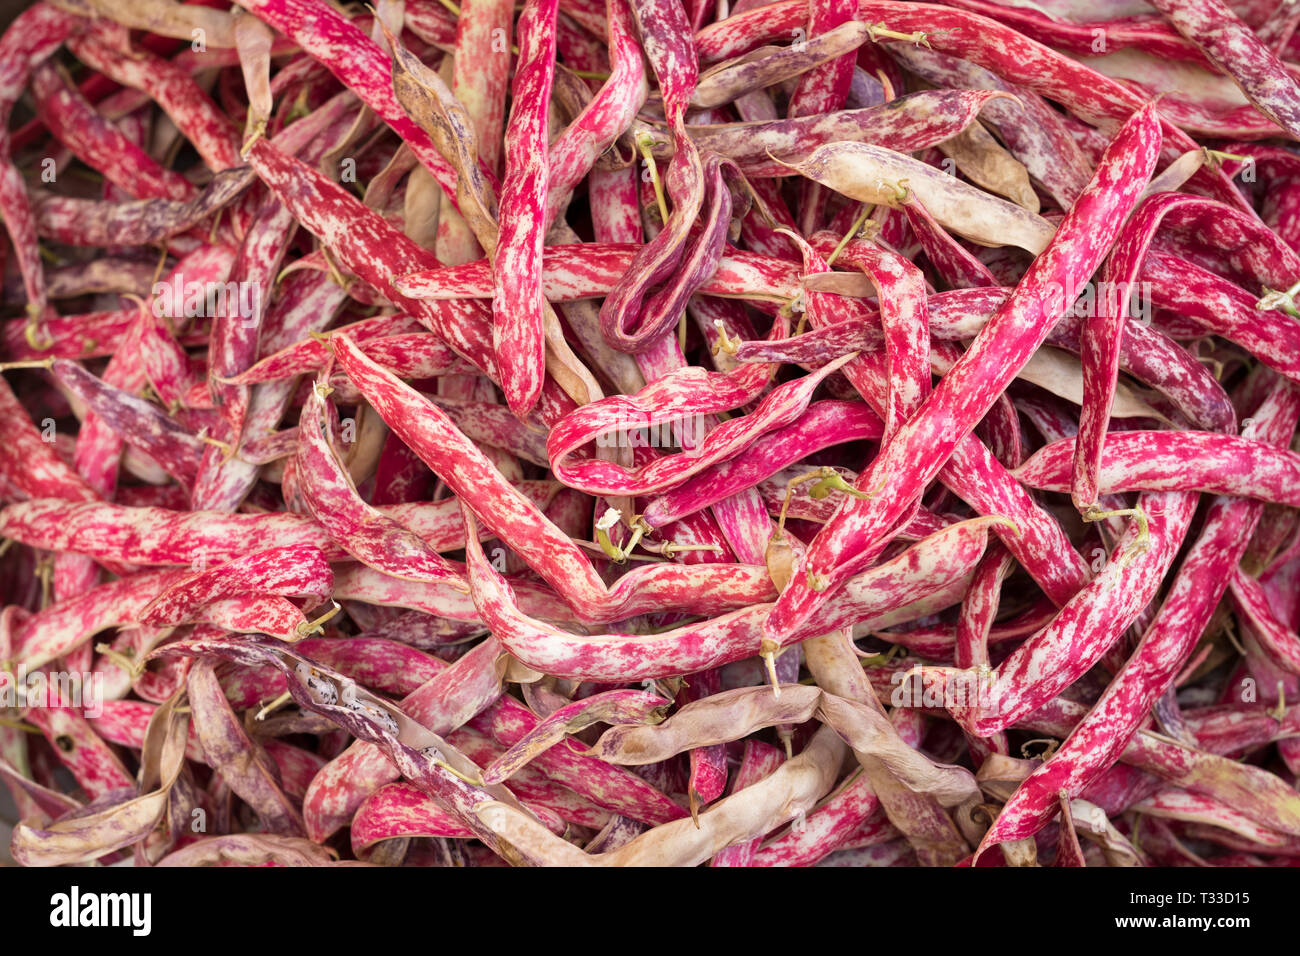 Rosa colore rosso Demi-sec di fagioli secchi al Capo street market per cibi freschi a Palermo, Sicilia, Italia Foto Stock